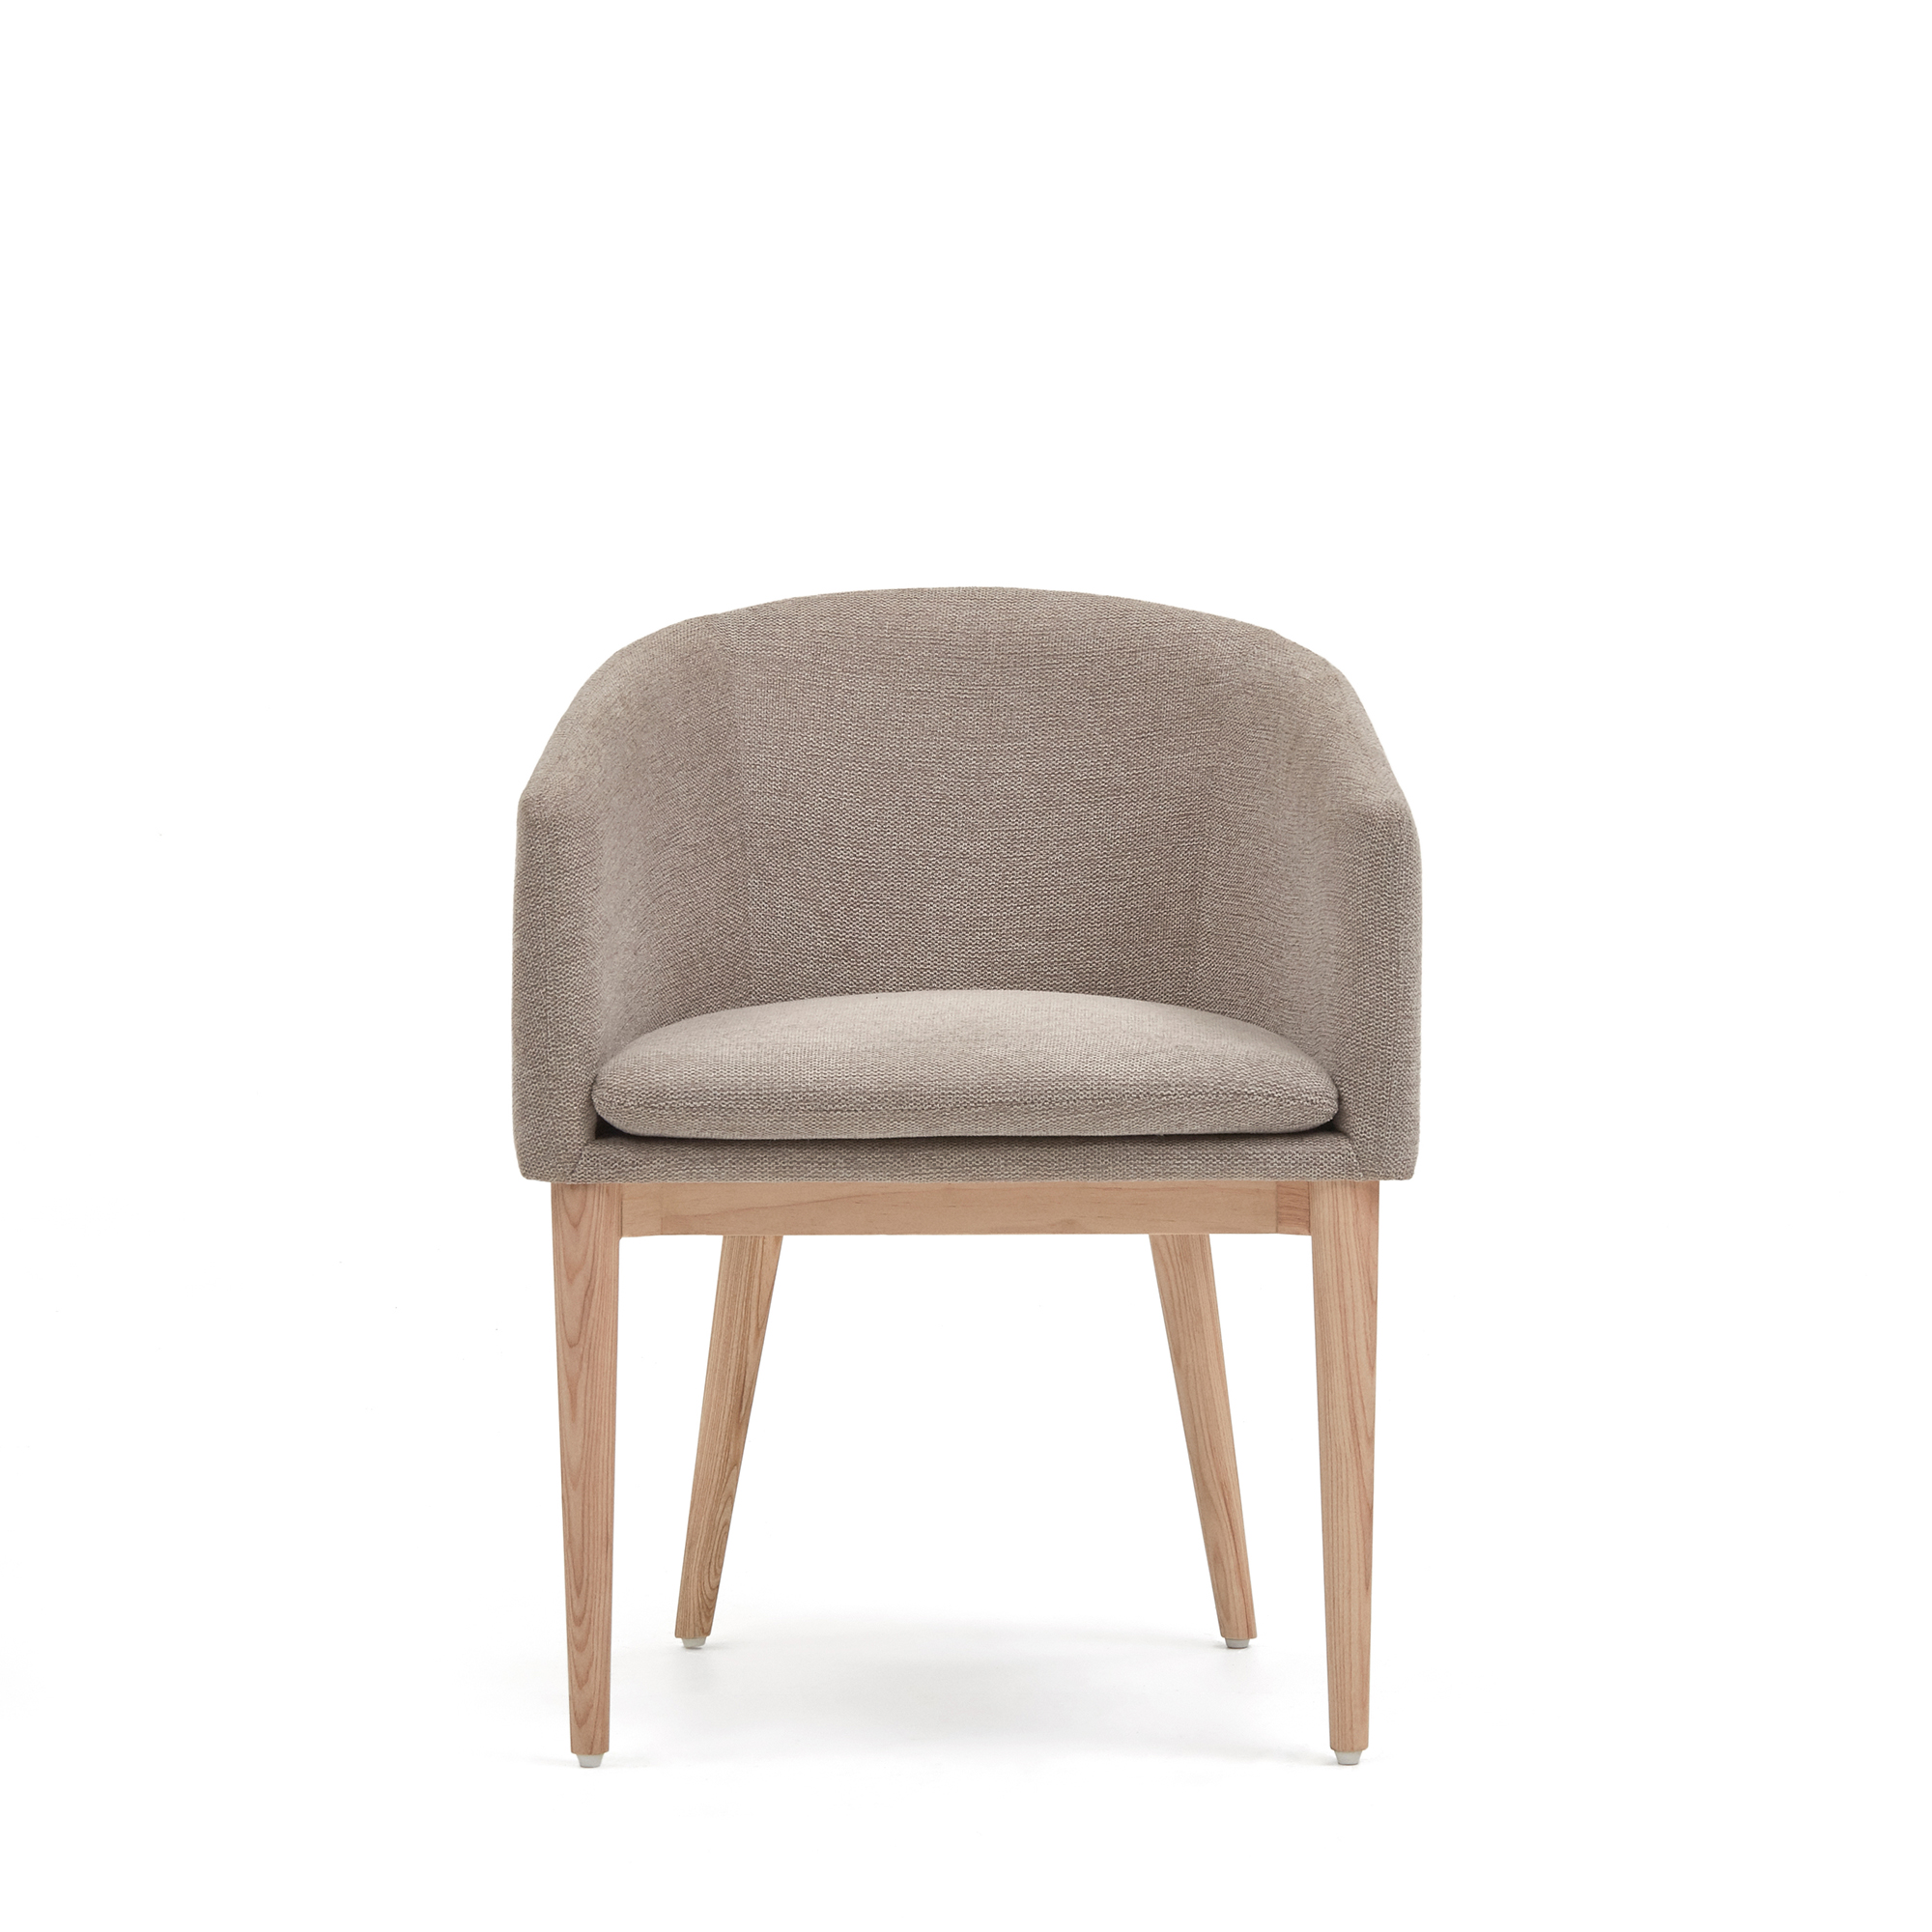 LAFORMA Harlan spisebordsstol, m. armlæn - brun chenille stol og natur asketræ